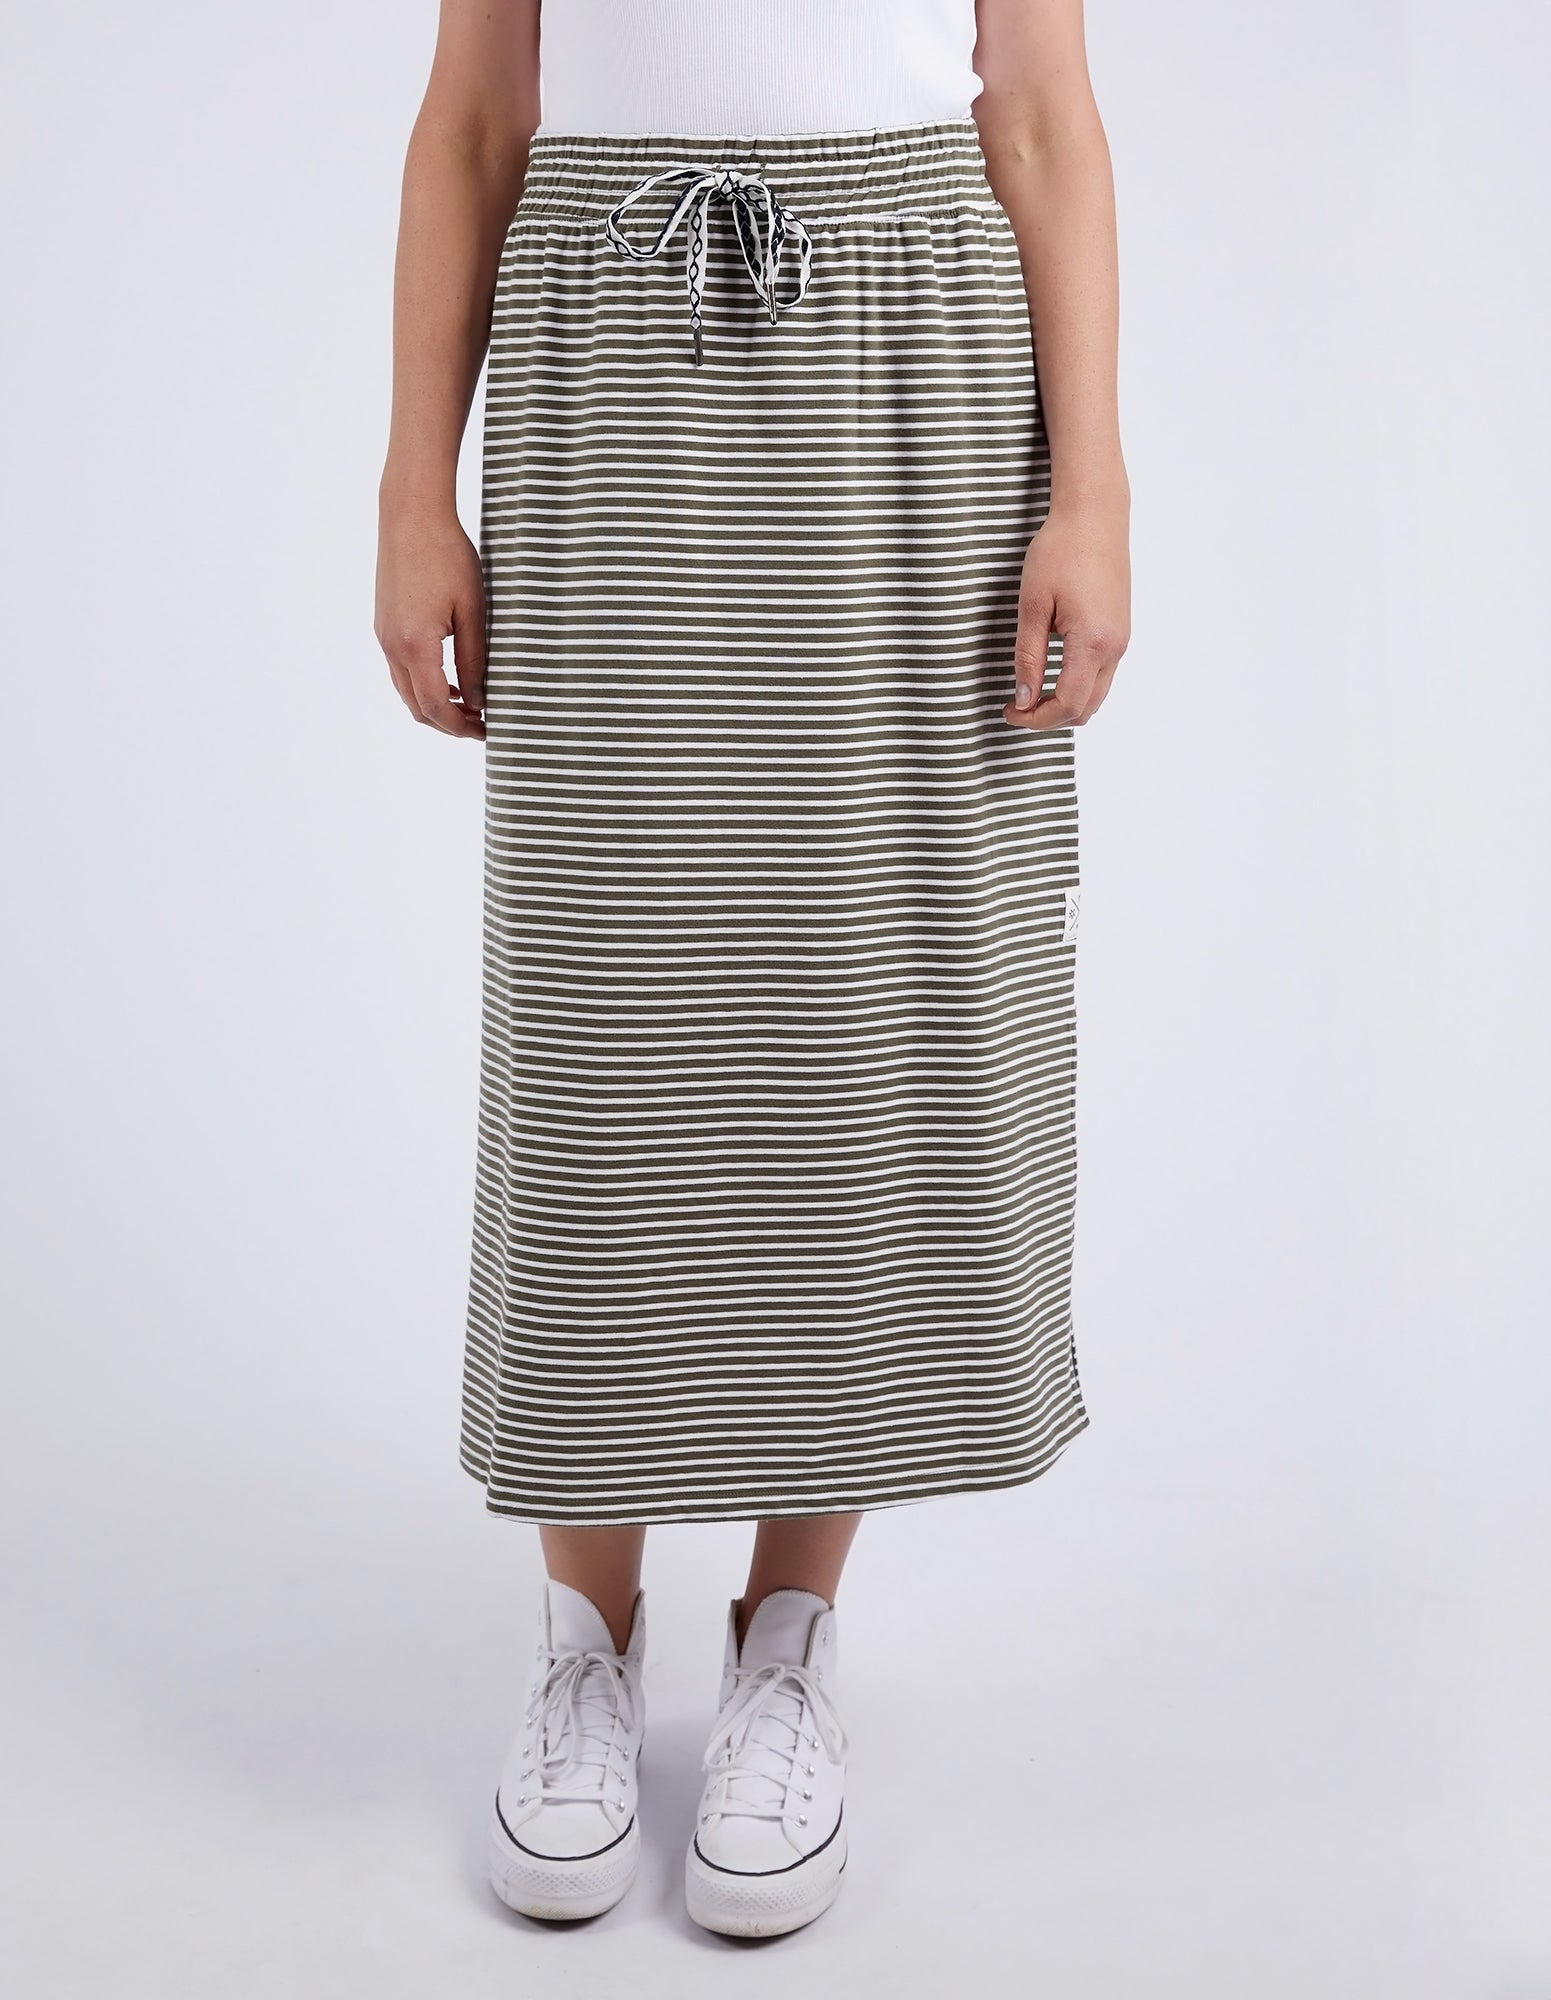 Travel Skirt Khaki & White Stripe